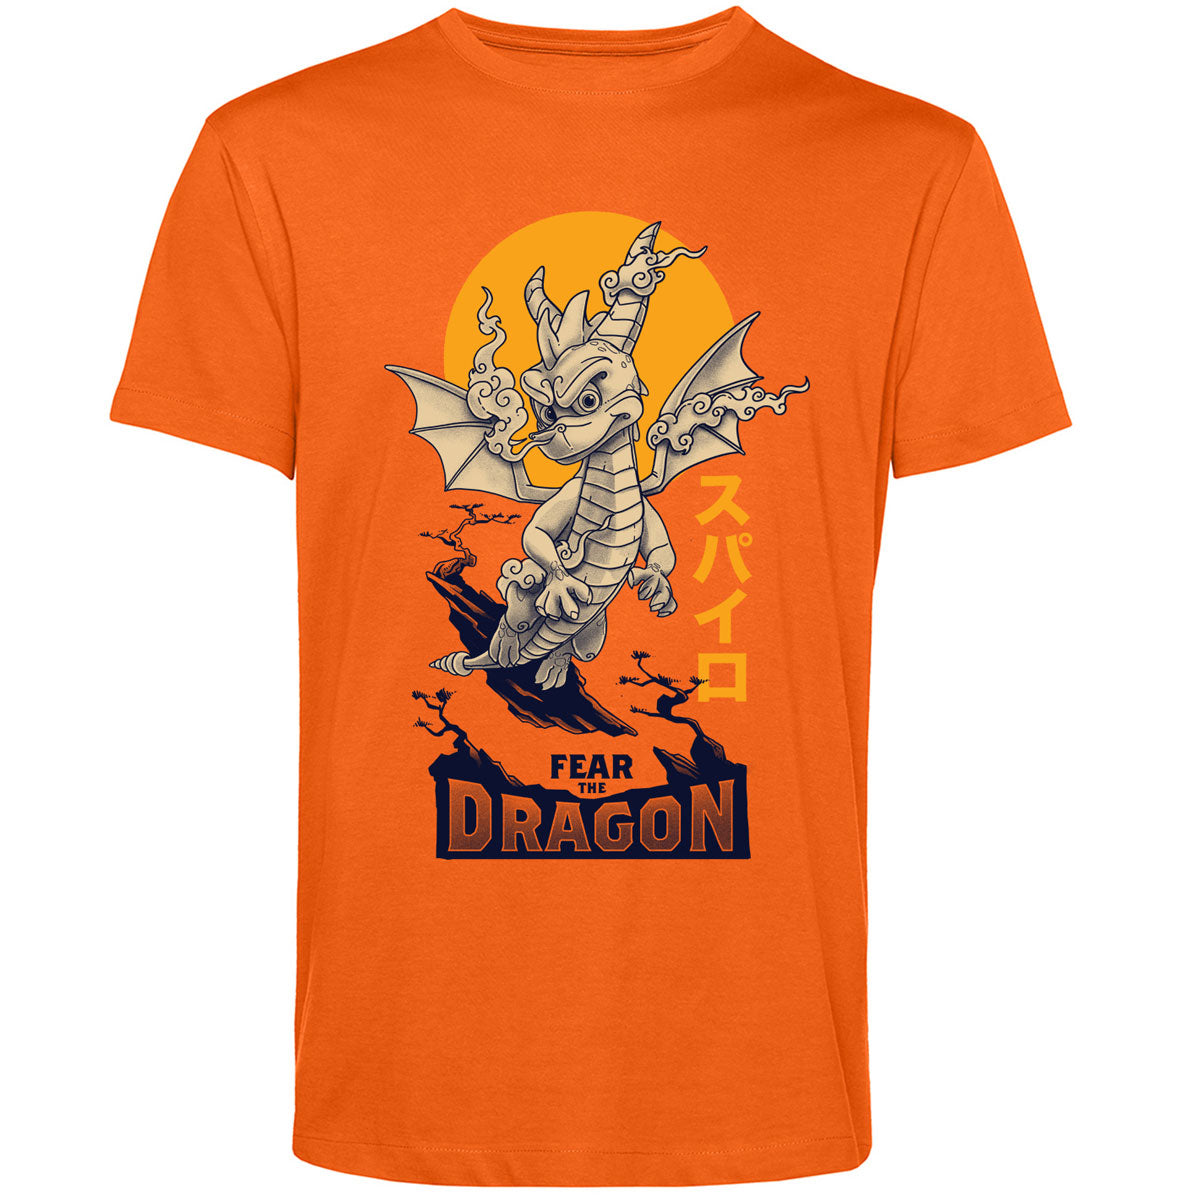 Spyro Fear the Dragon Artist Edition Orange T-Shirt